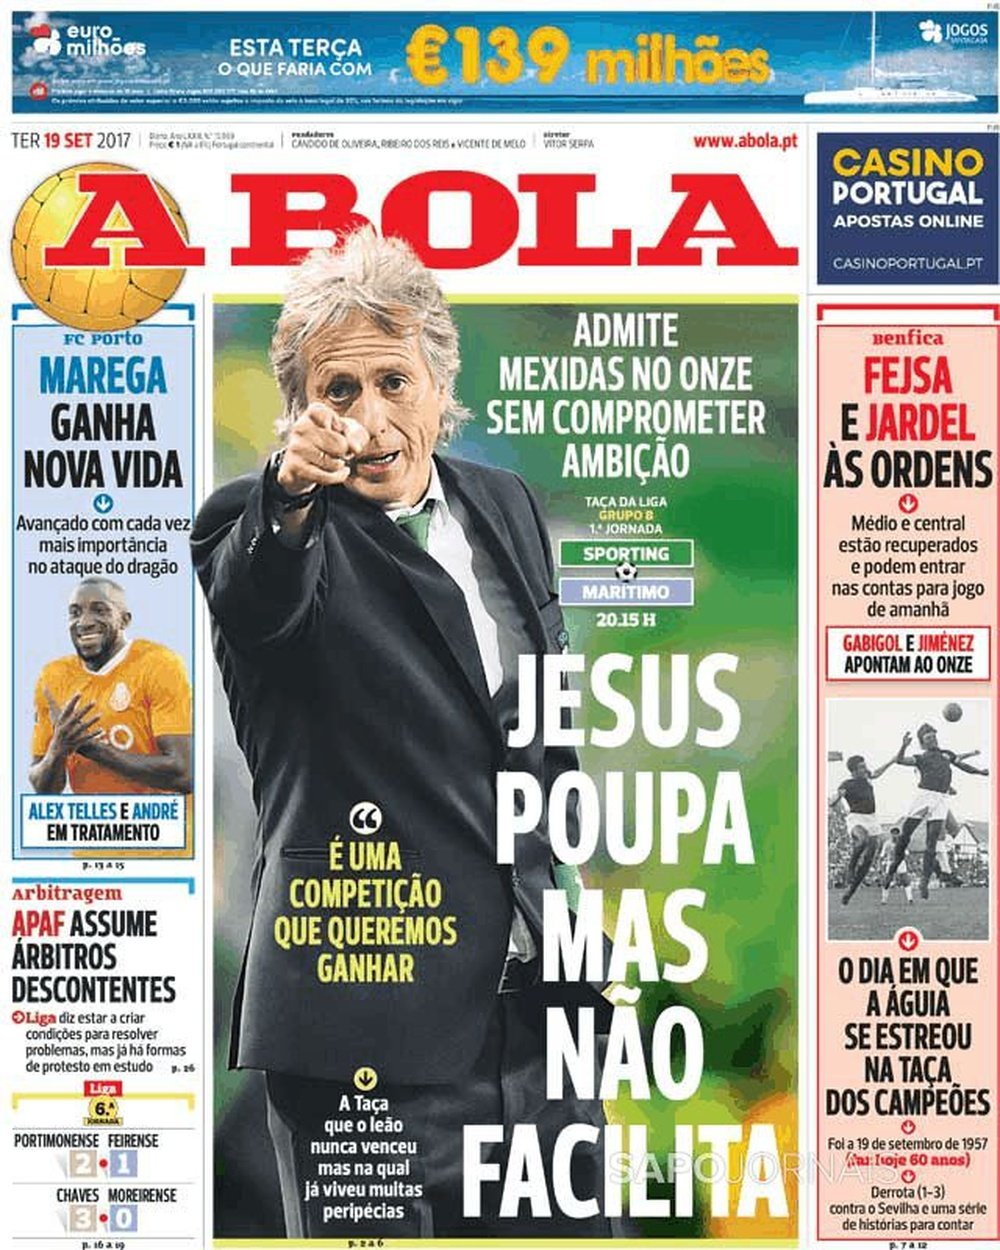 Capa do jornal 'A Bola', 19-09-2017. A Bola